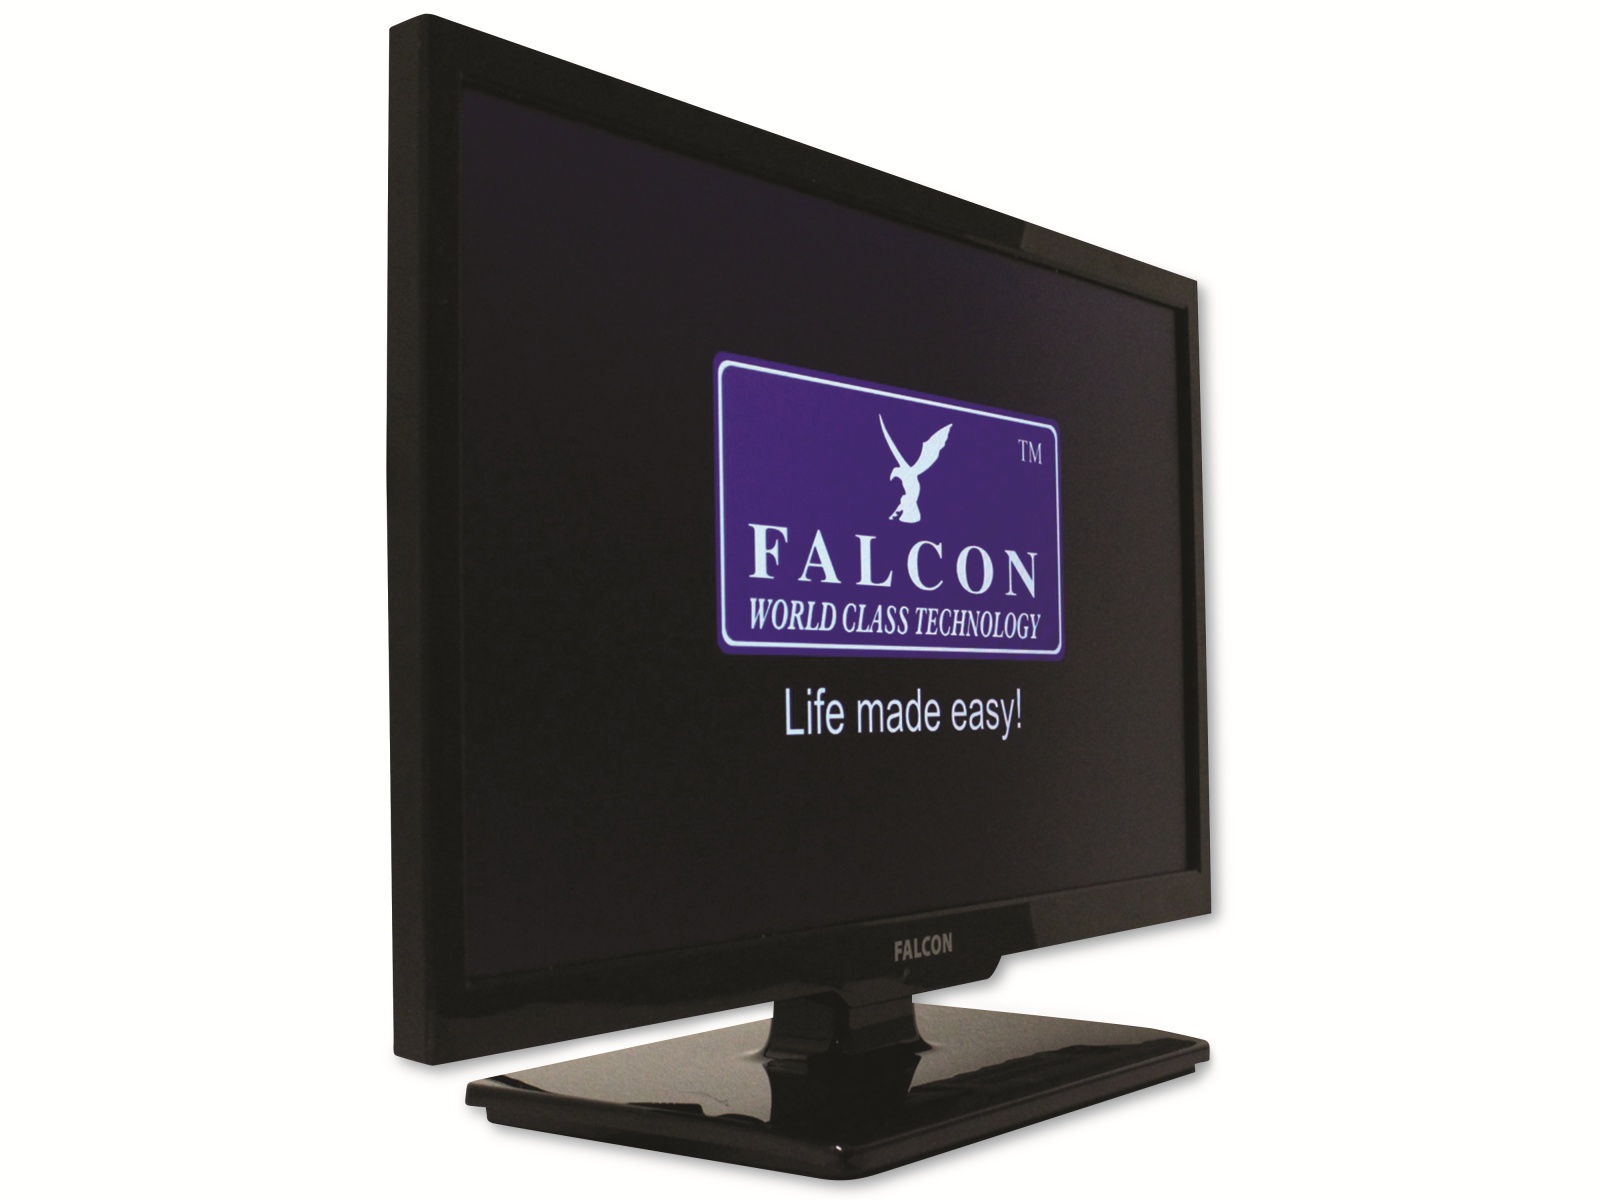 FALCON Easyfind TV Camping Set Traveller Kit 2, inkl. LED-TV 61 cm (24")